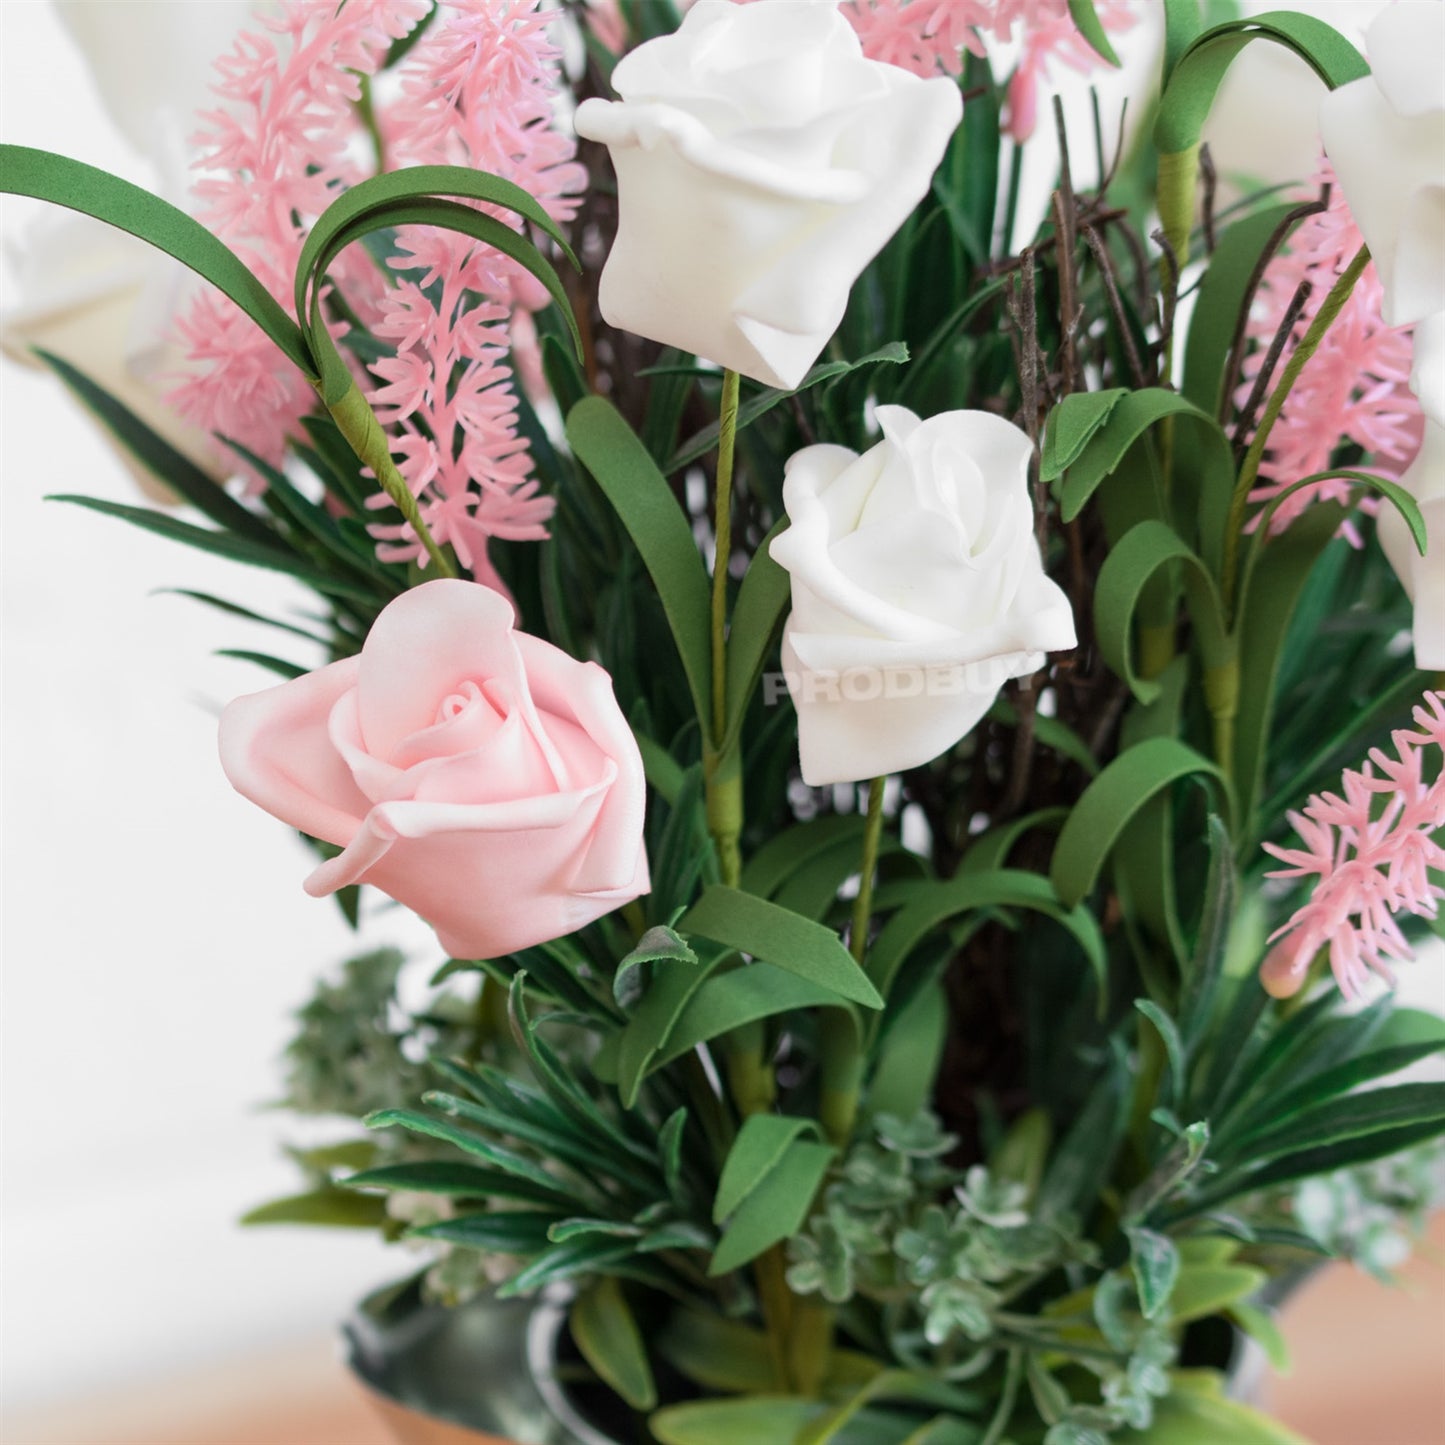 Indoor Artificial Bouquet Roses Flowers in Metal Heart Jug Vase Pot Wedding Home